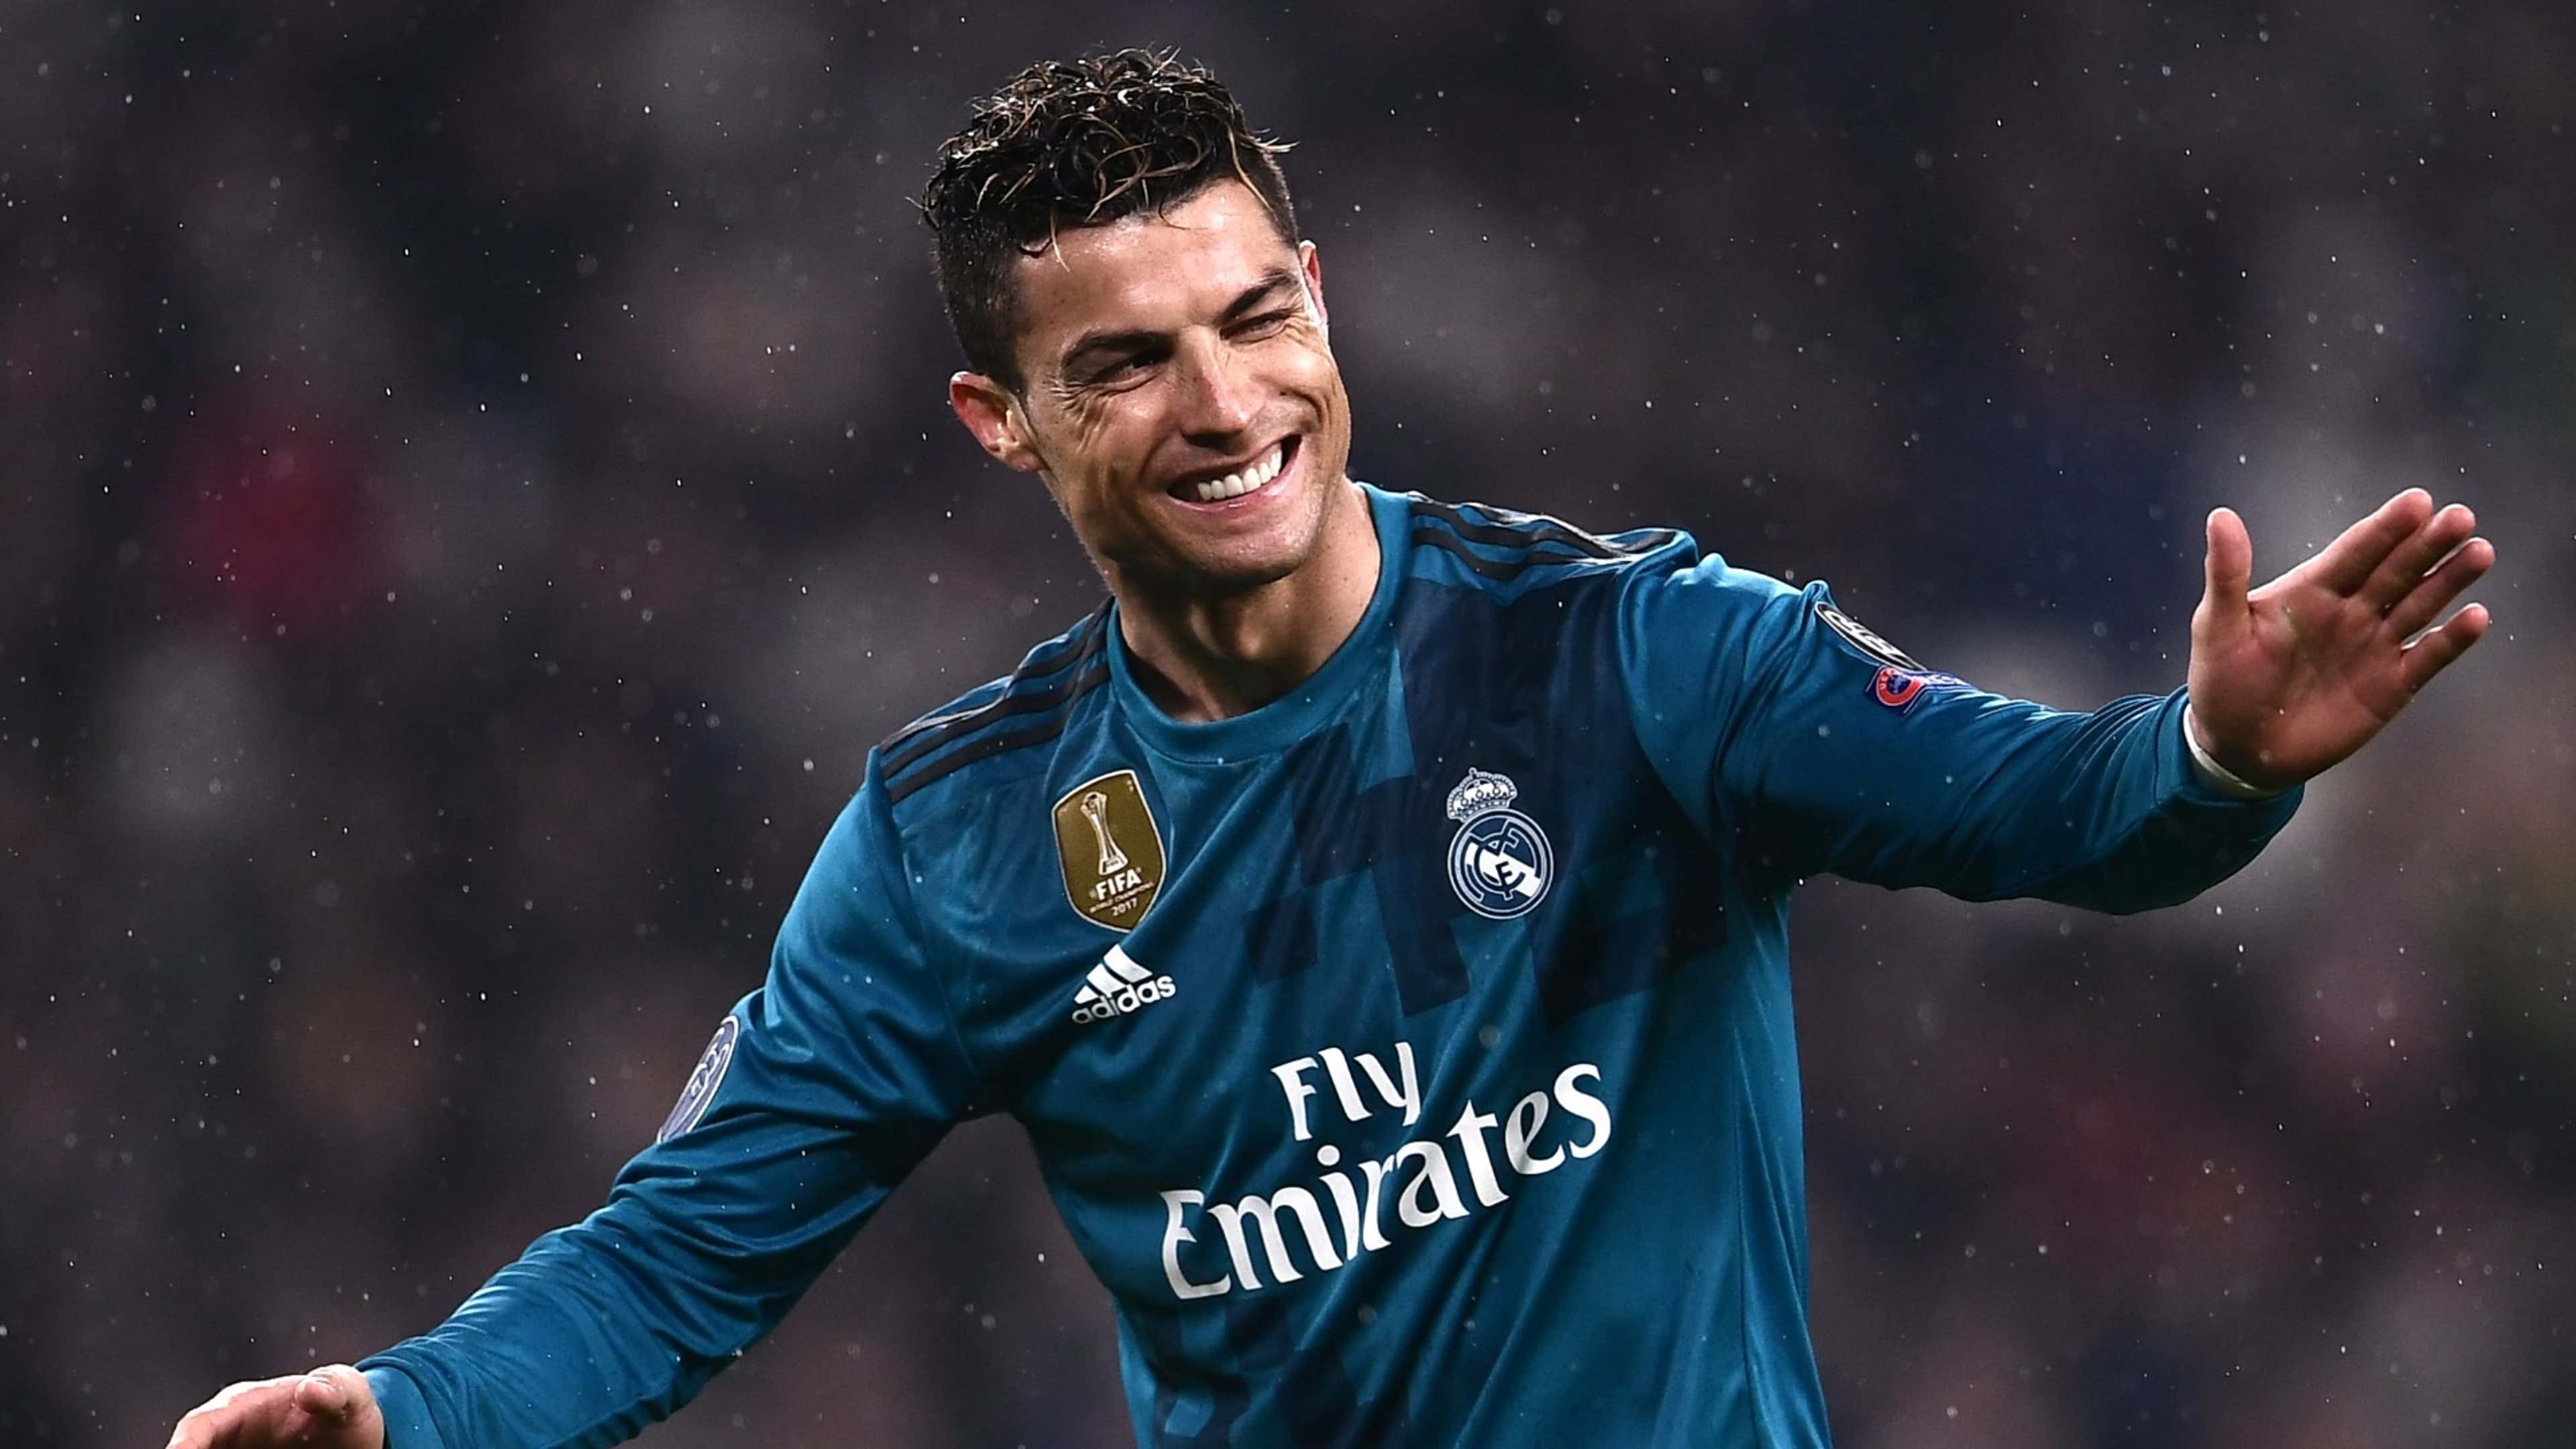 O legado de Cristiano Ronaldo no Real Madrid, UEFA Champions League